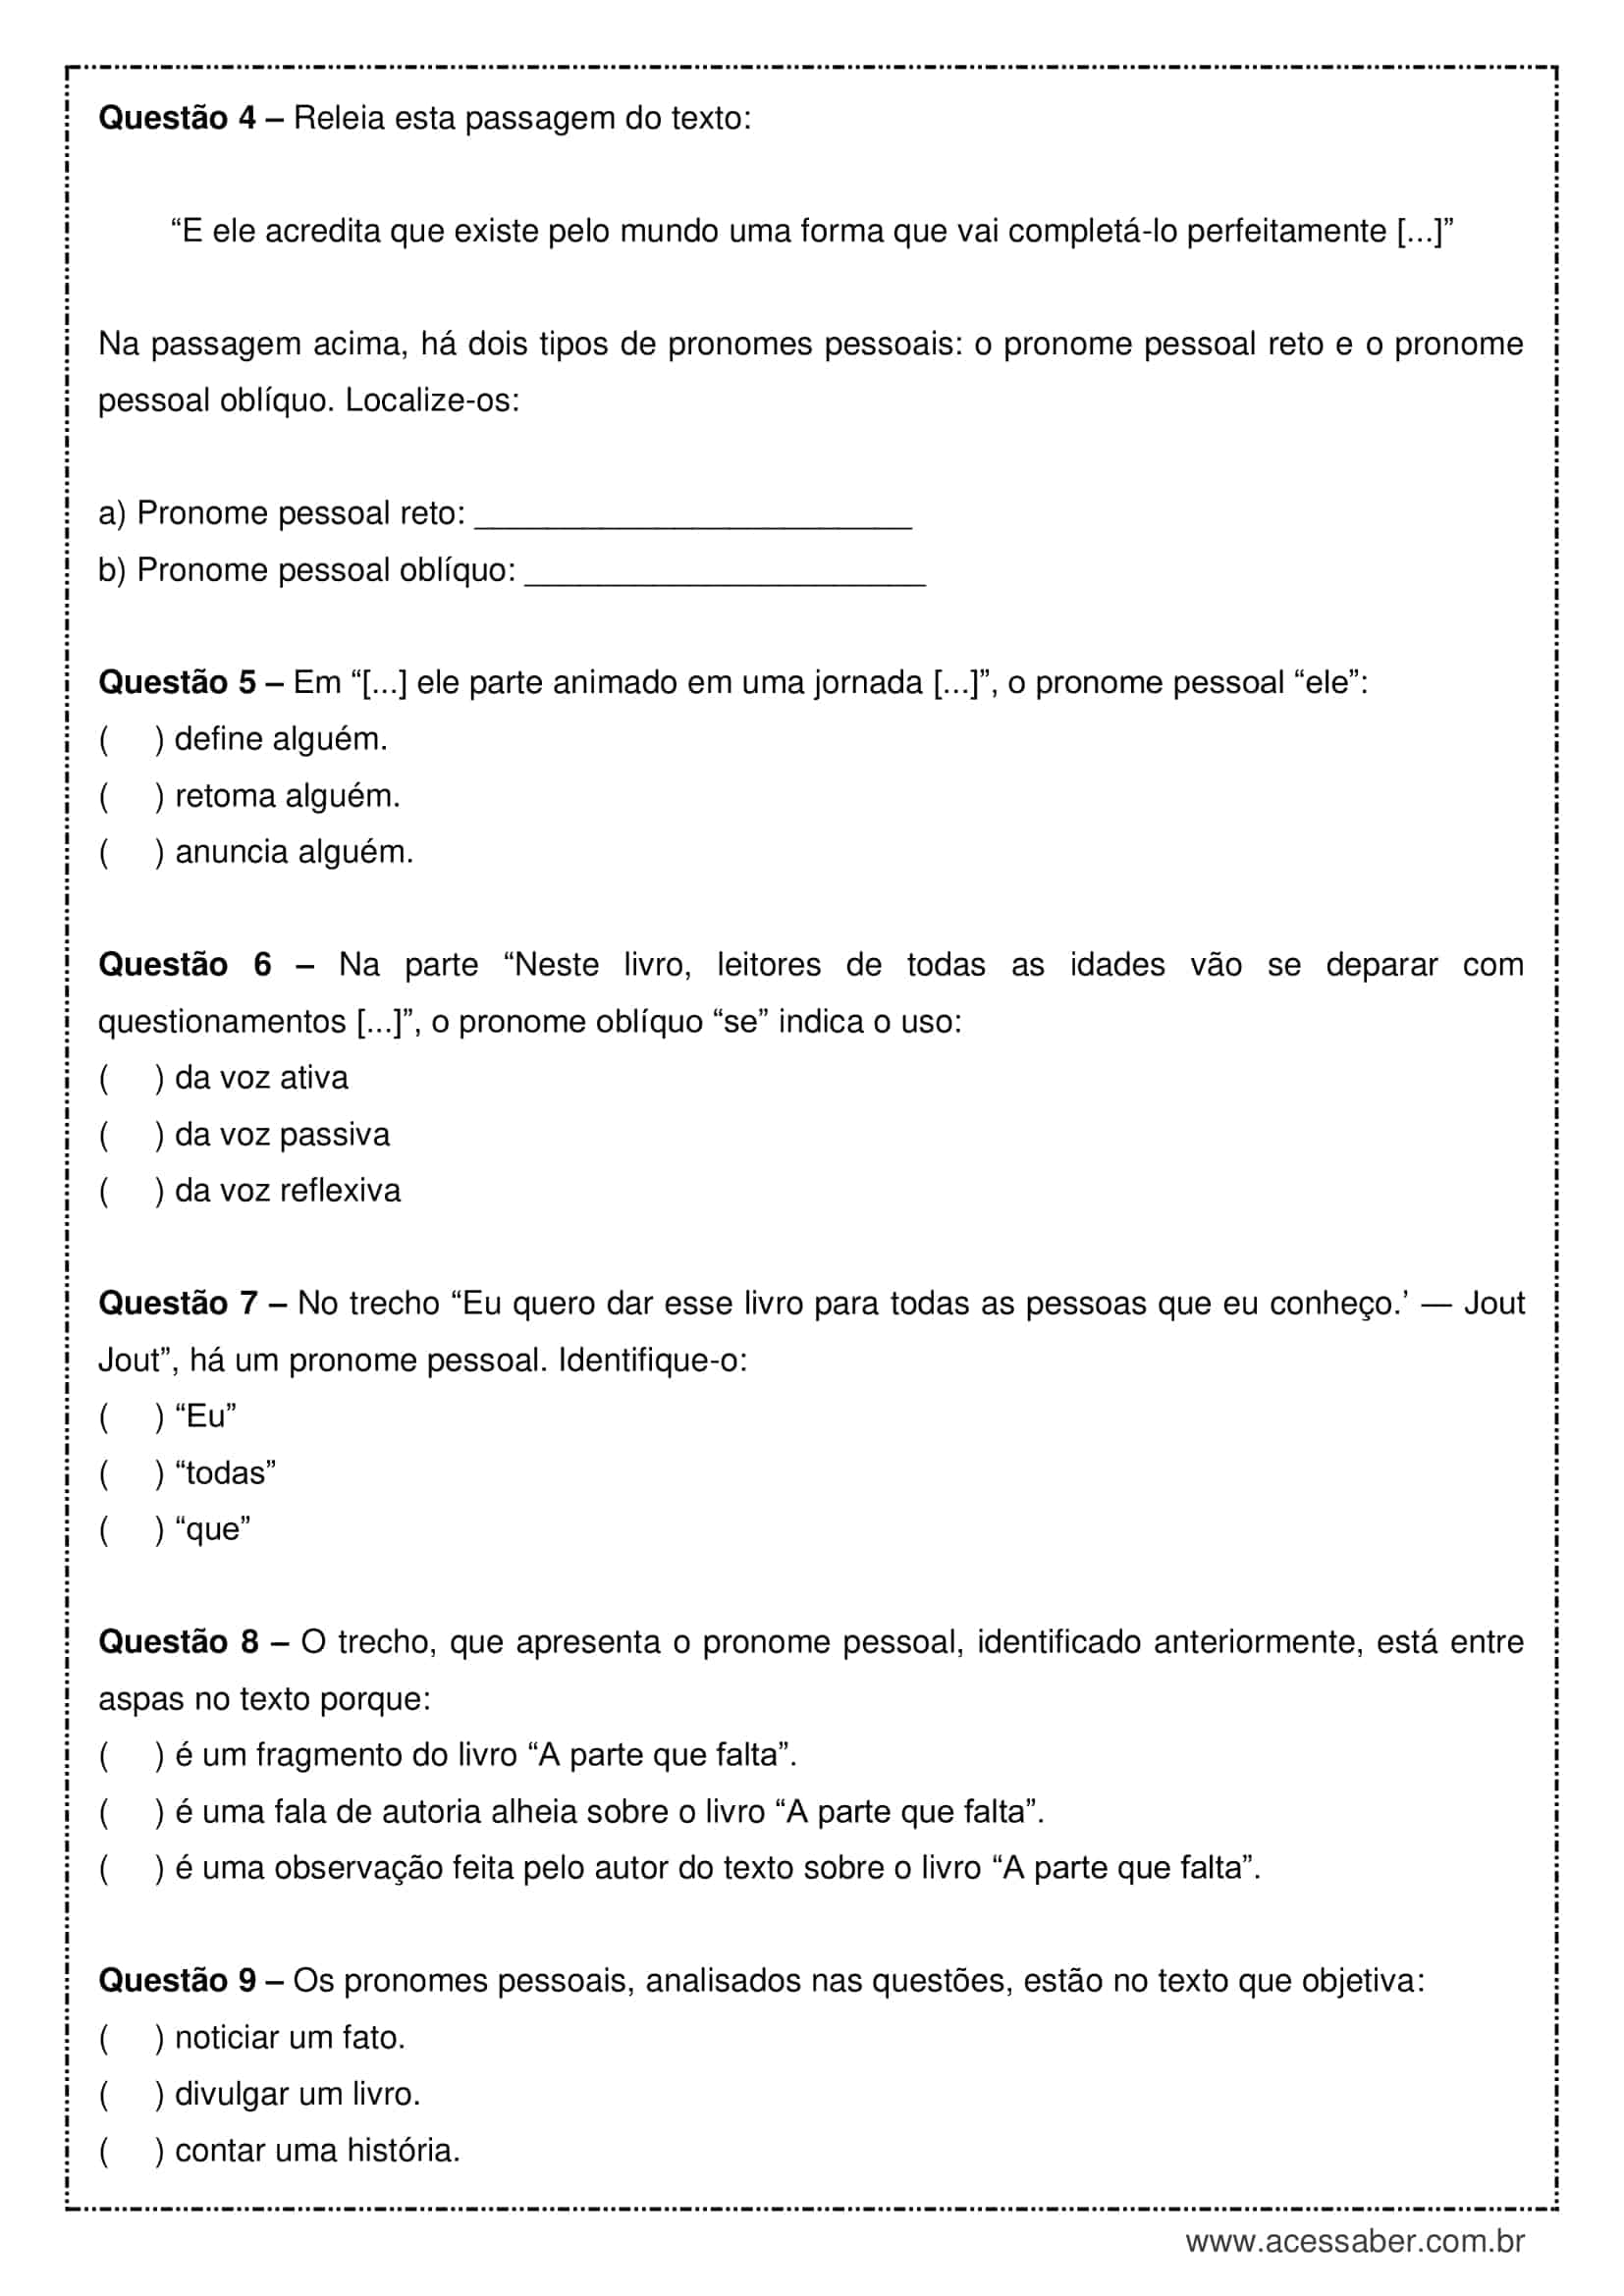 O Que e Pronomes, PDF, Pronome